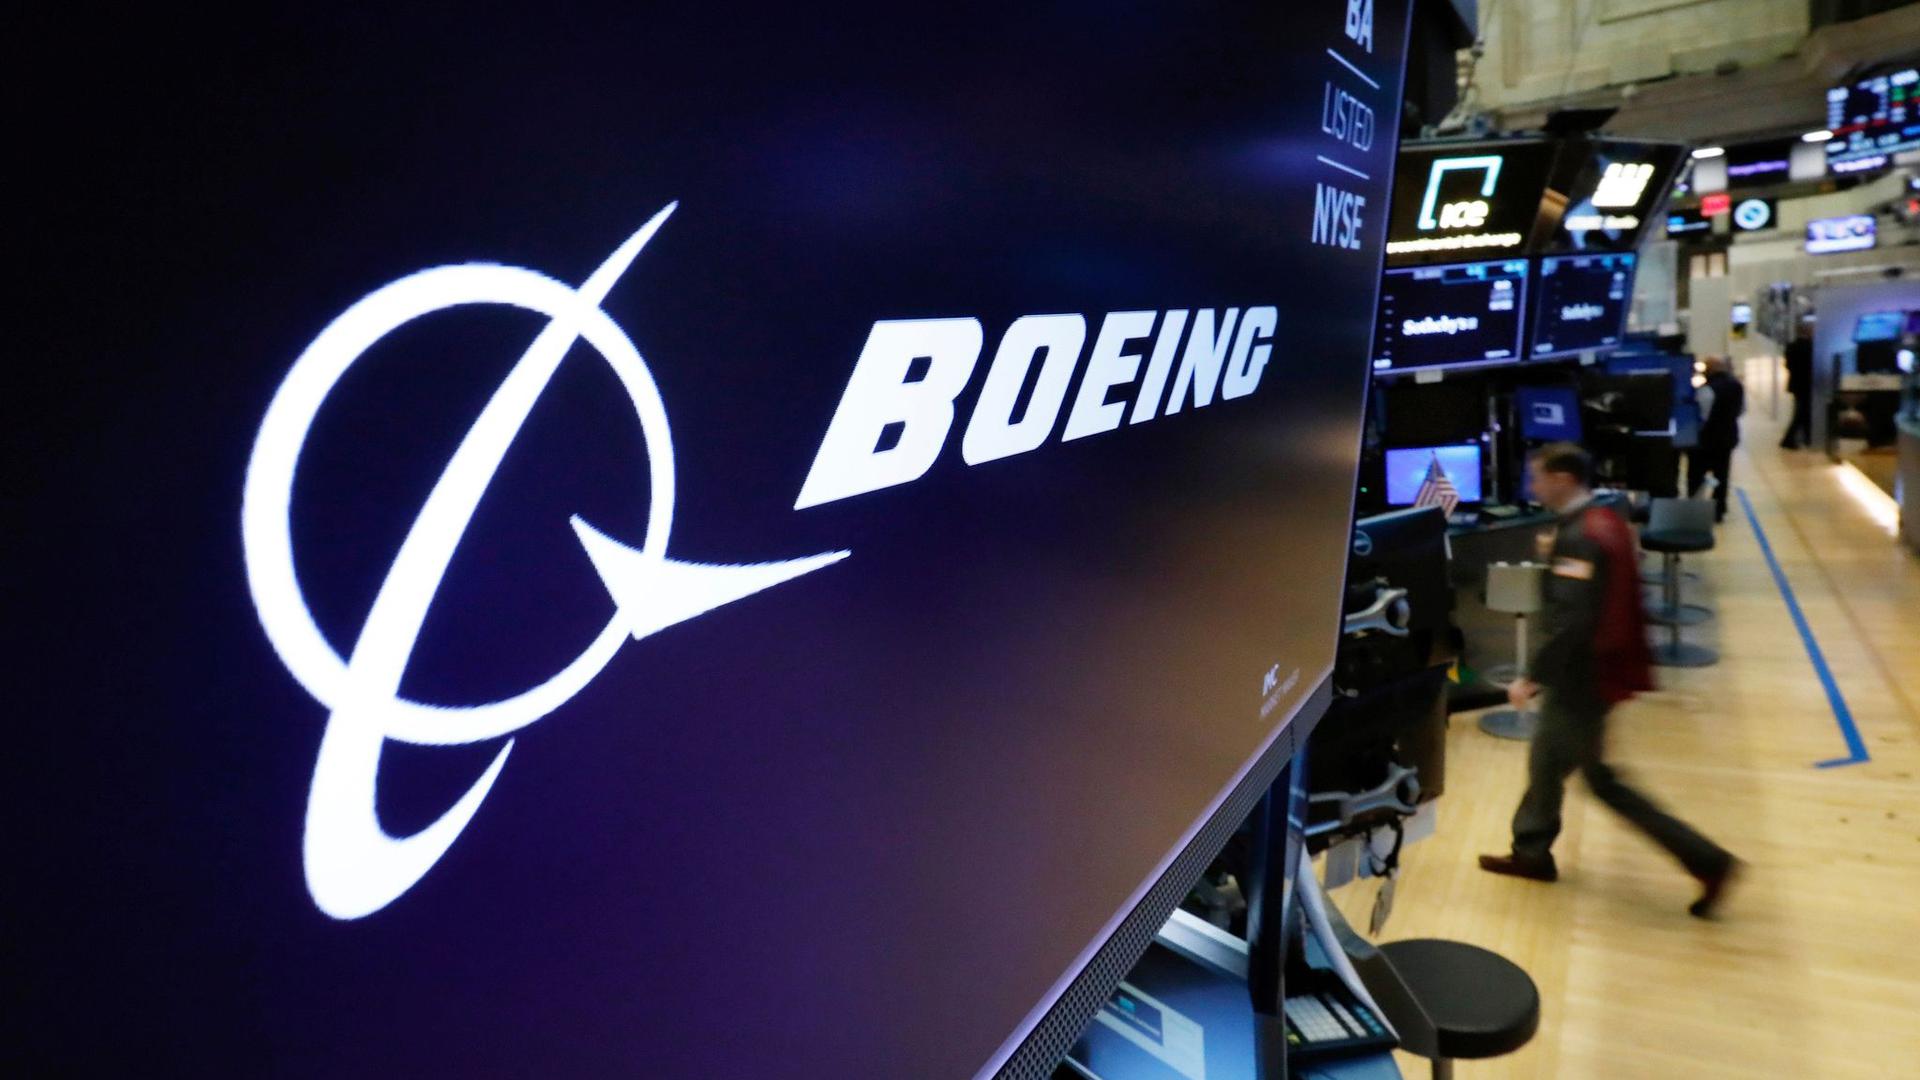 Trotz einer hohen Nachfrage beim Flugzeugtyp 737 Max verzeichnet Boeing große Gewinnverluste.